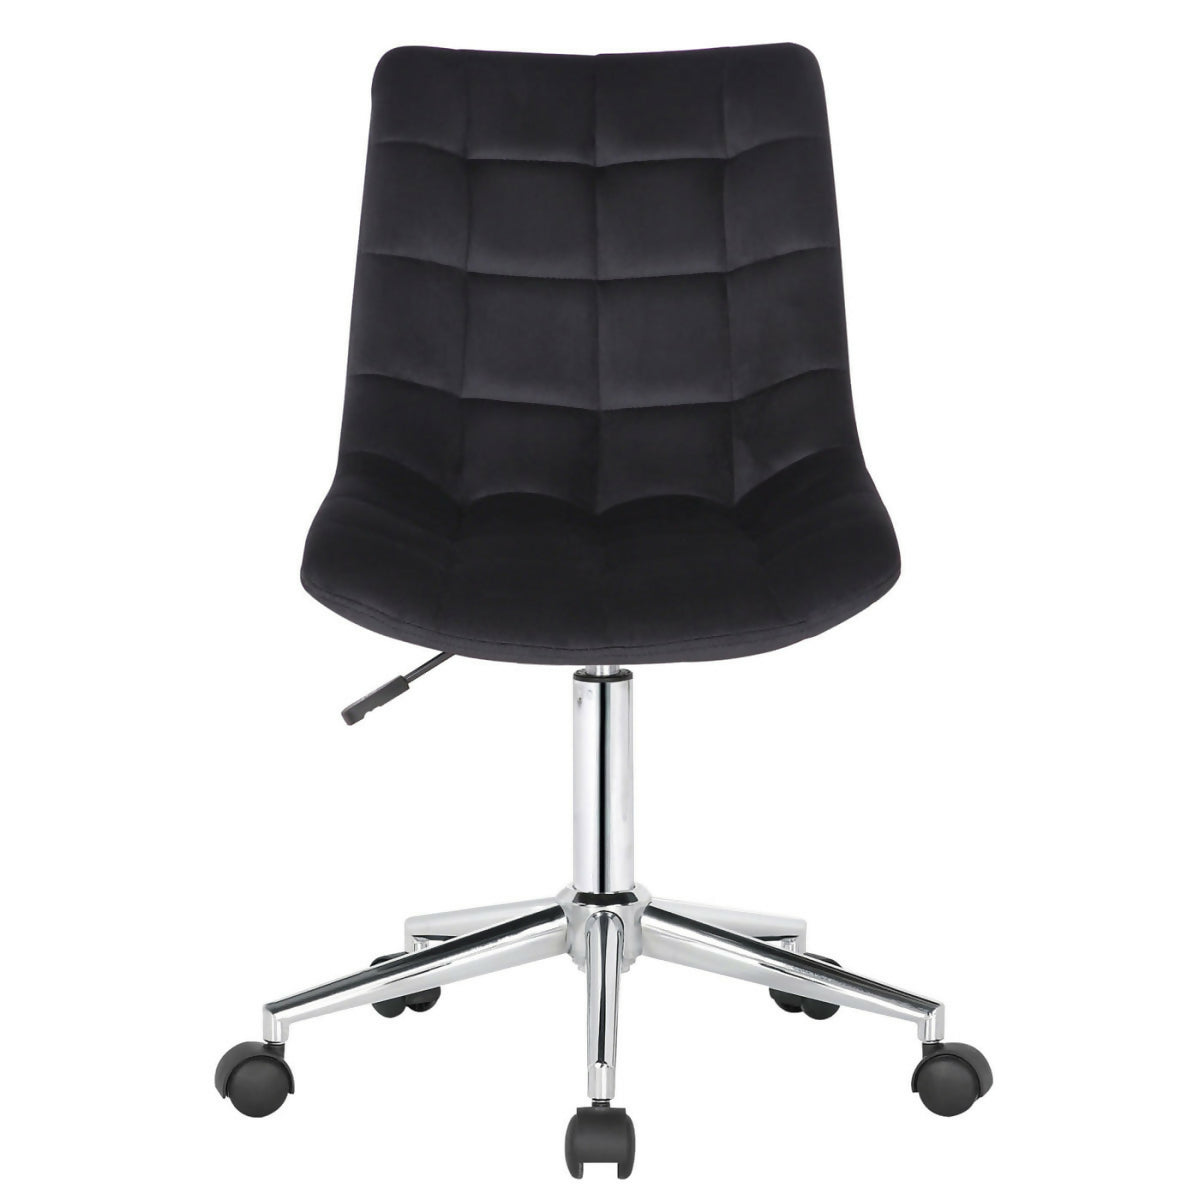 Medford office chair - Black velvet - 0